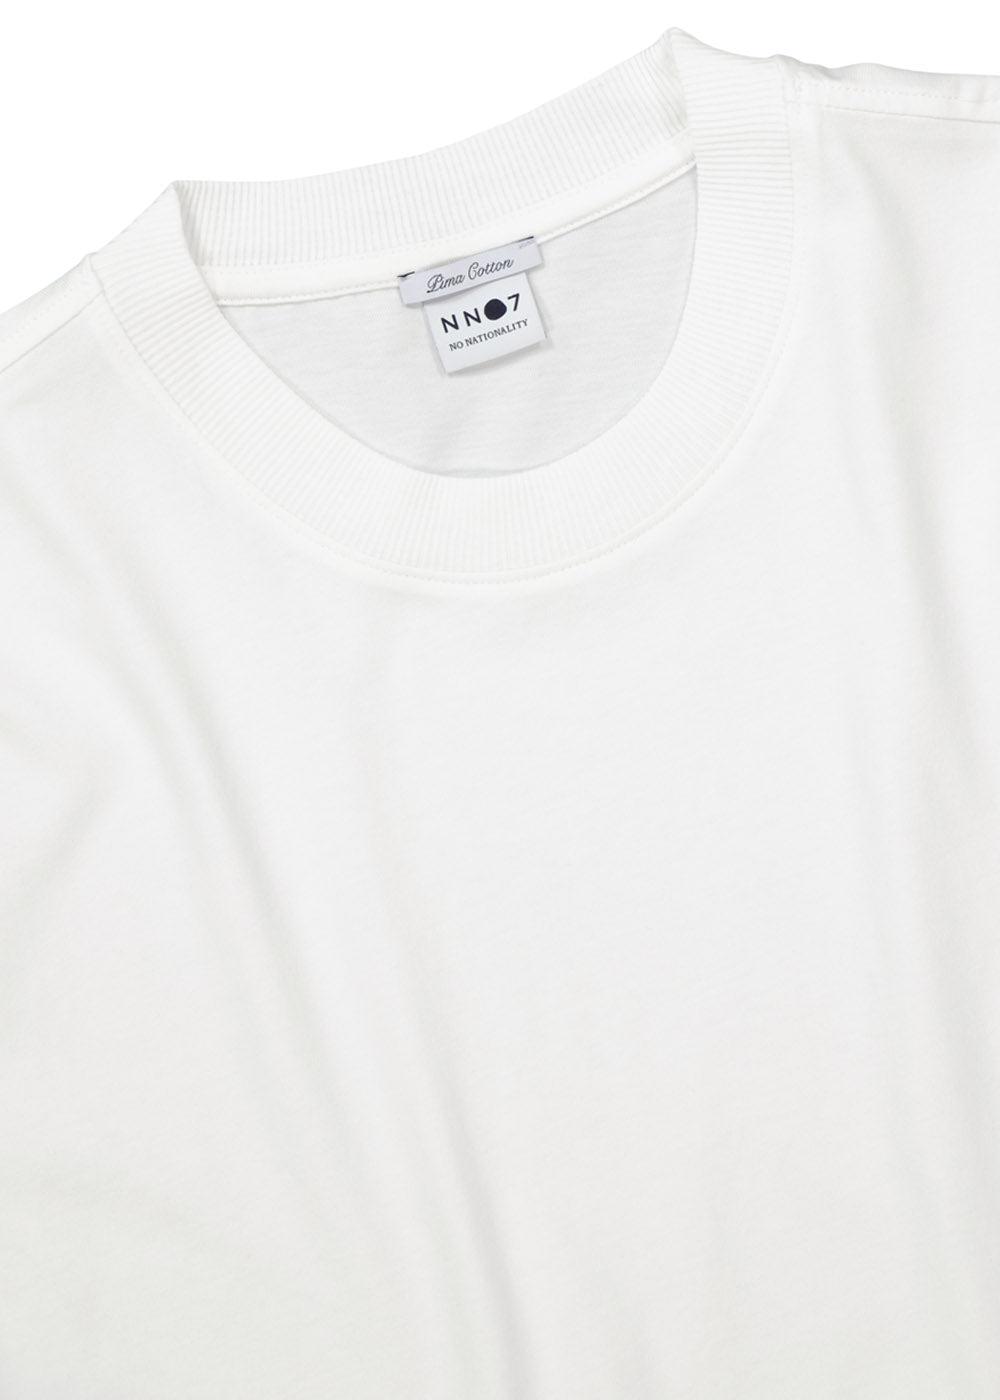 Adam T-shirt 3209 - White